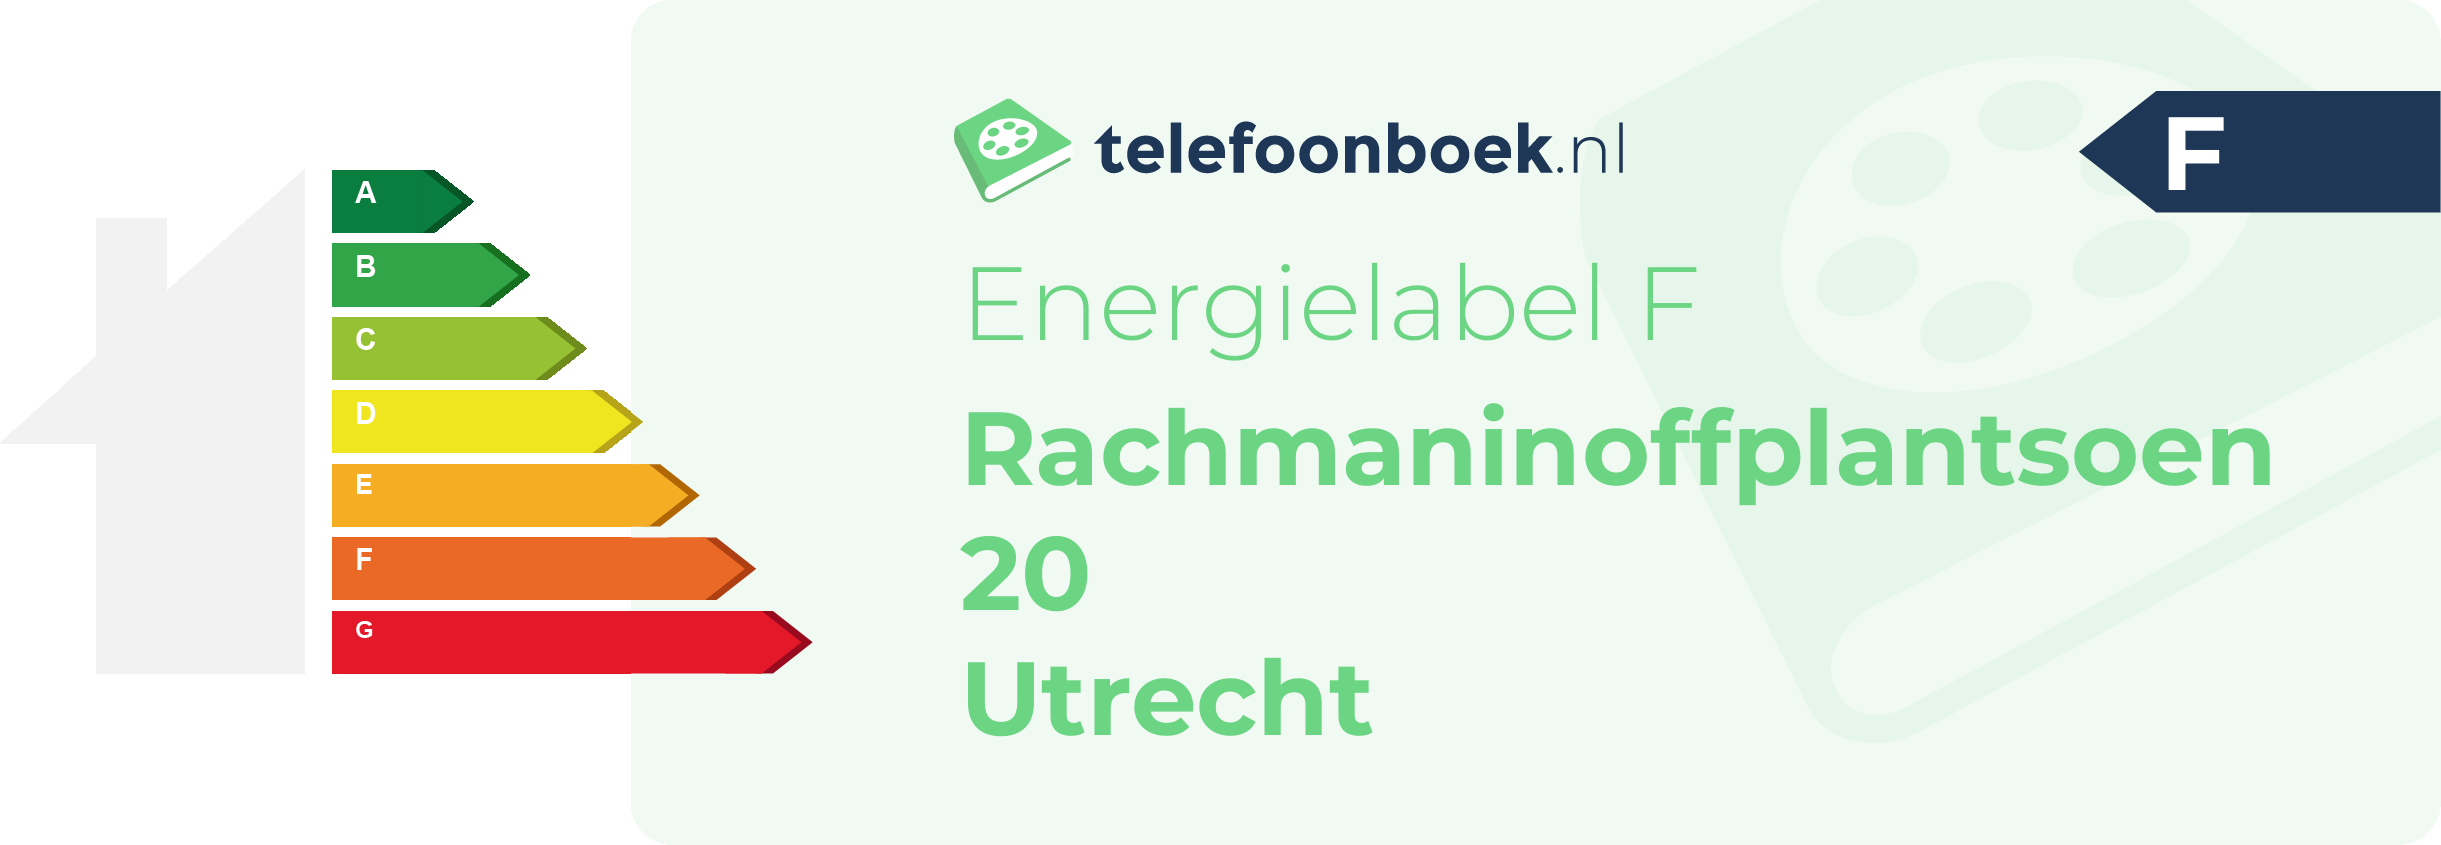 Energielabel Rachmaninoffplantsoen 20 Utrecht